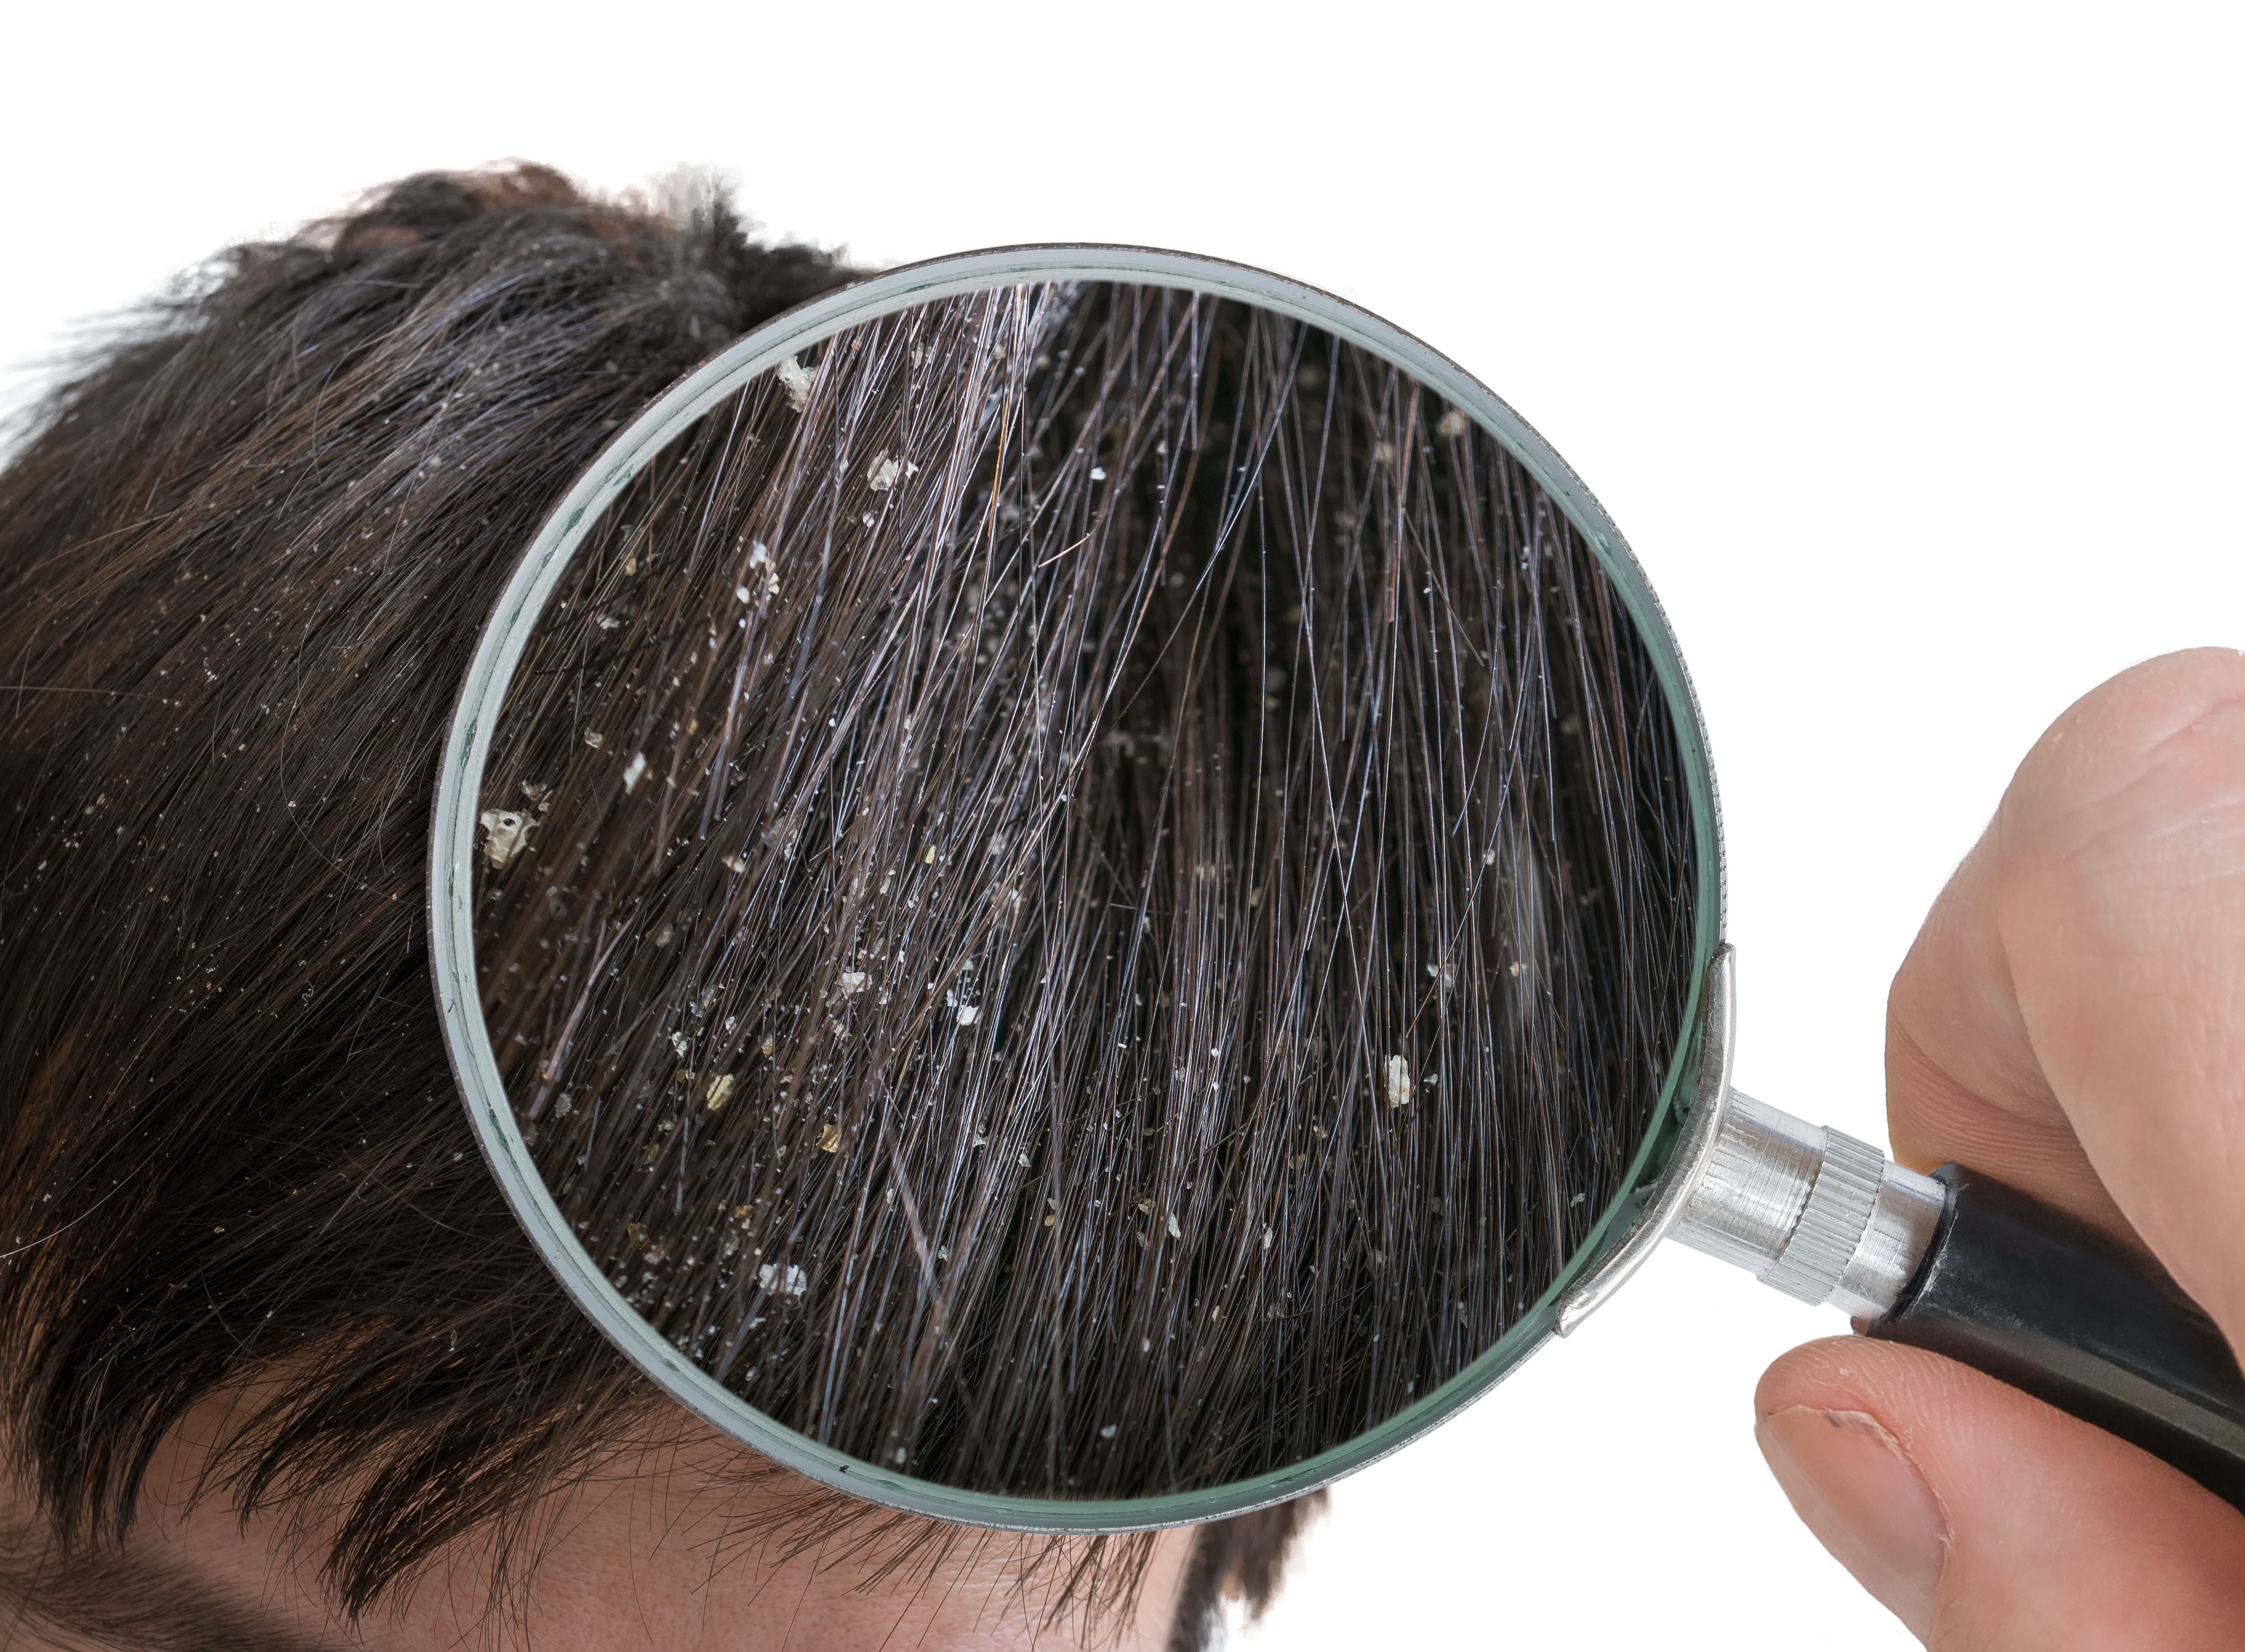 A pesar del mito, la caspa no es resultado de un cuero cabelludo seco, sino más bien de un cuero cabelludo oleoso o de la dermatitis seborreica 